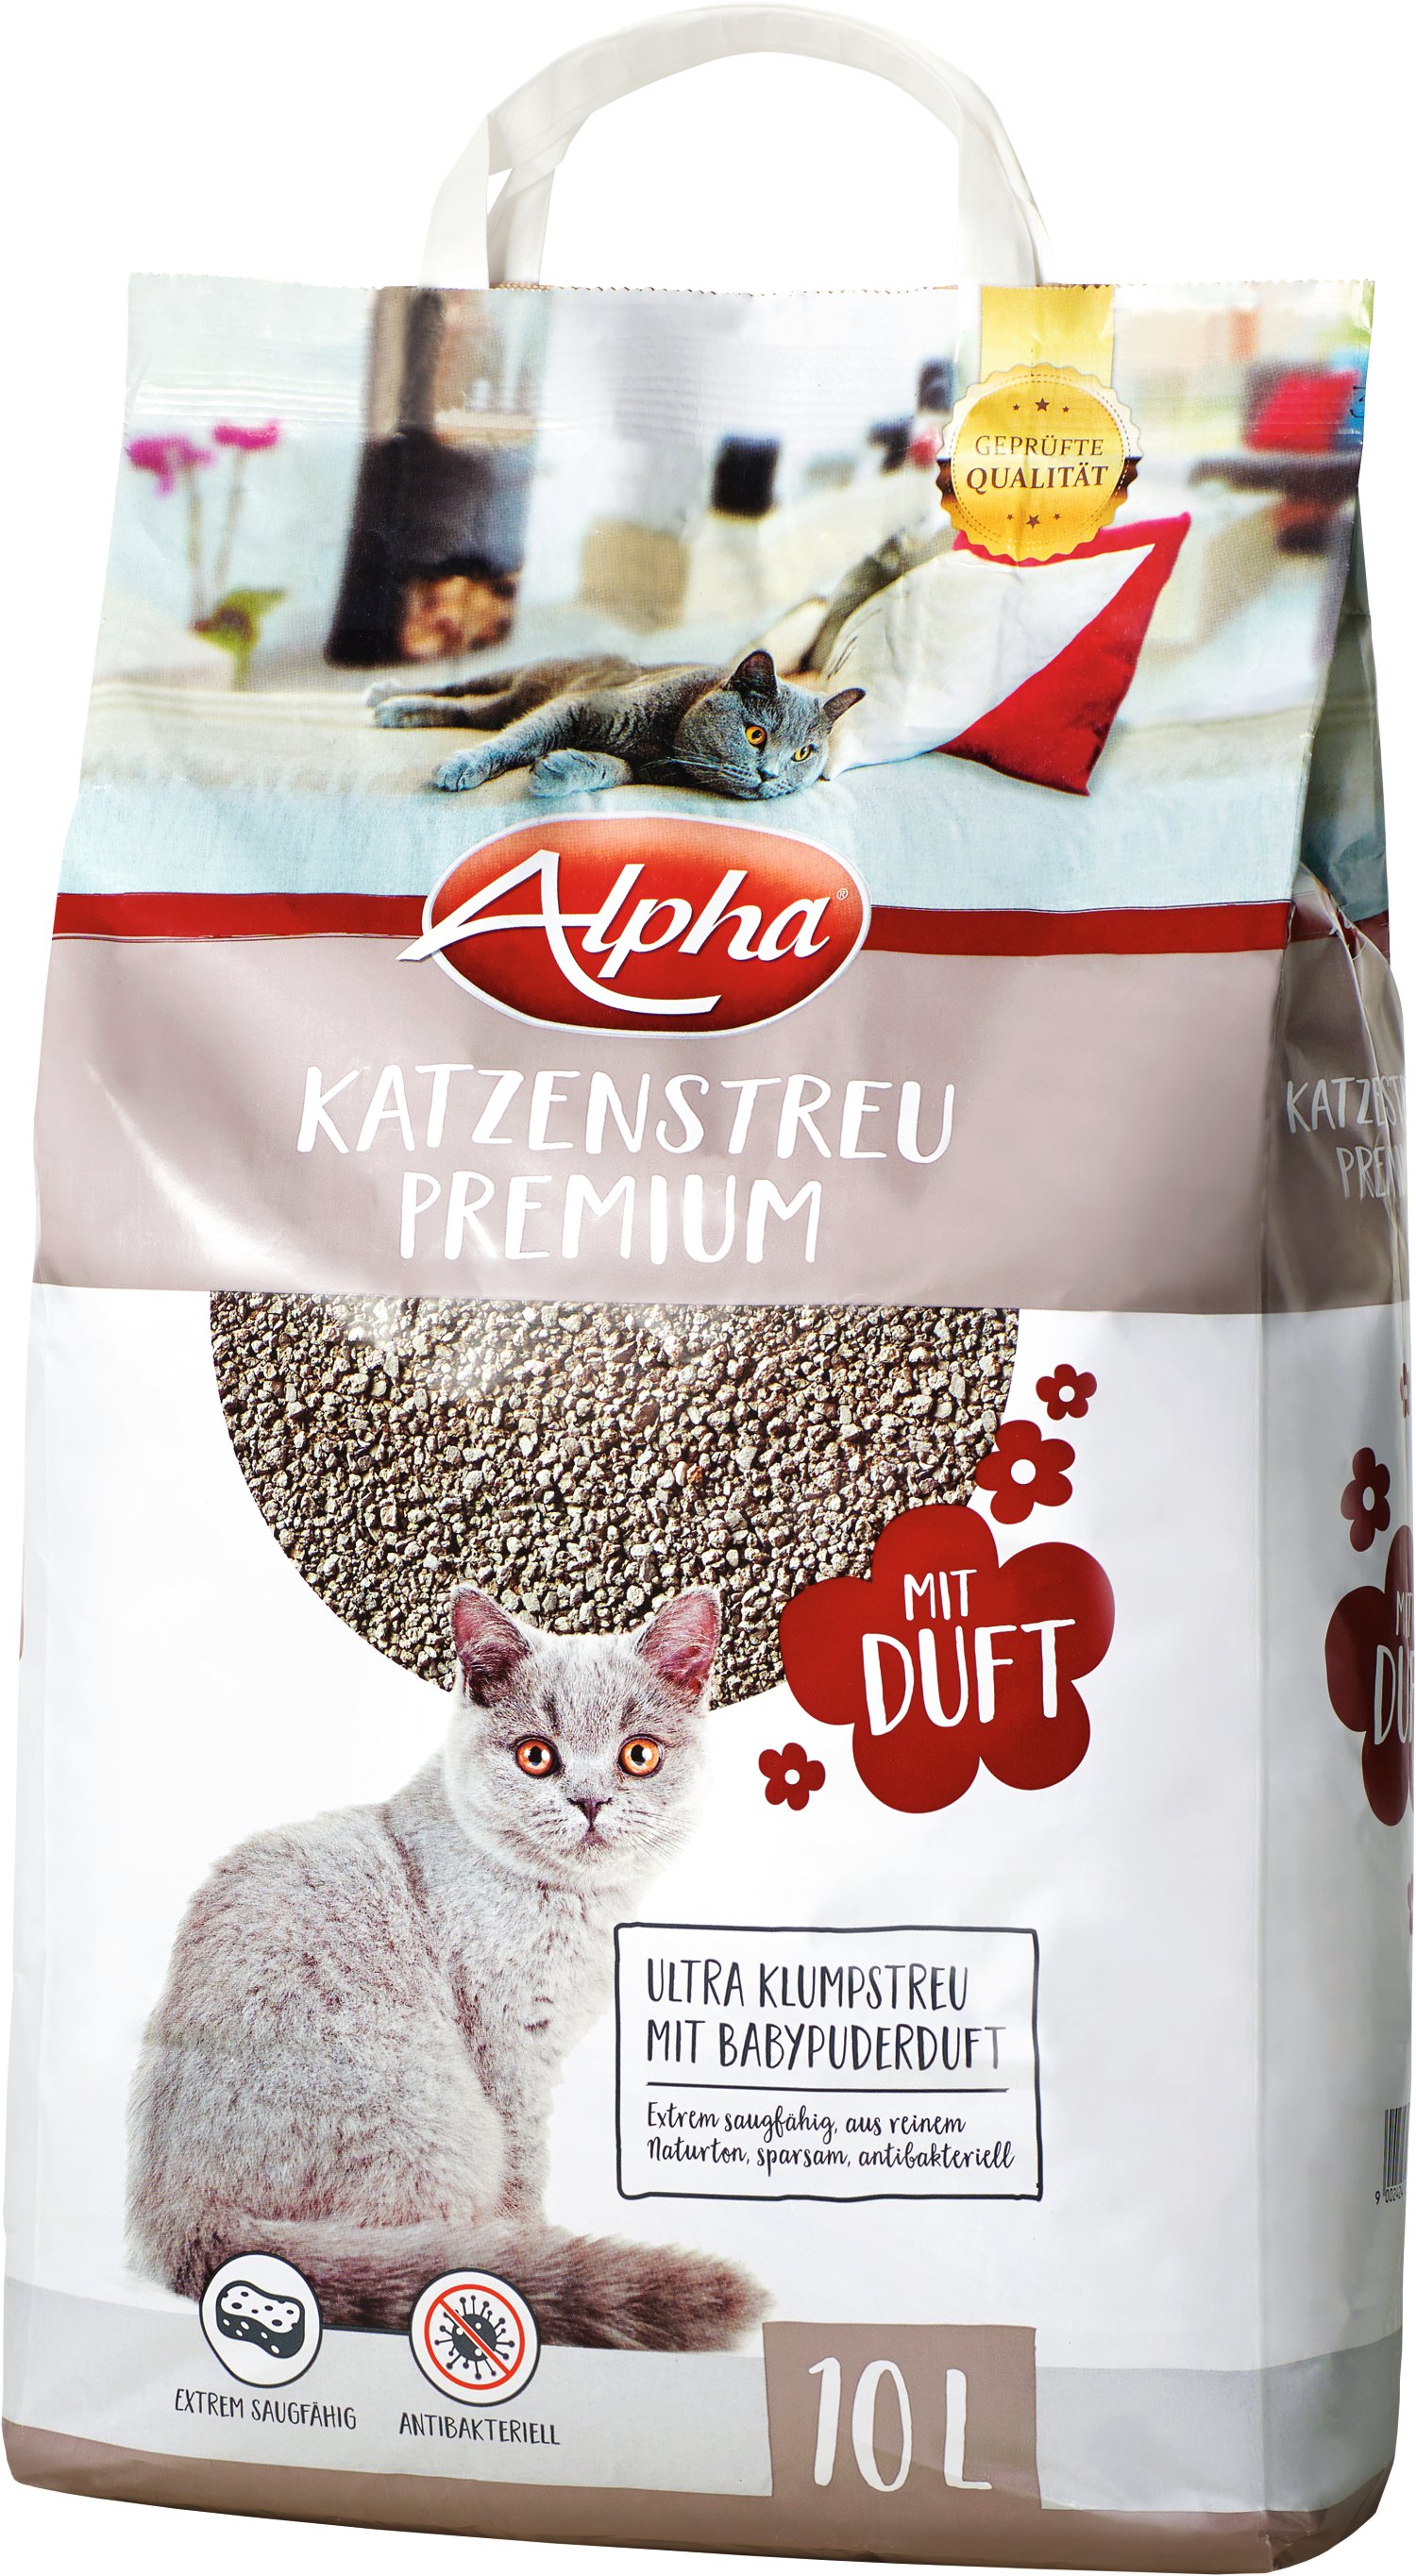 Alpha Katzenstreu Mit Duft 10 L Lagerhaus